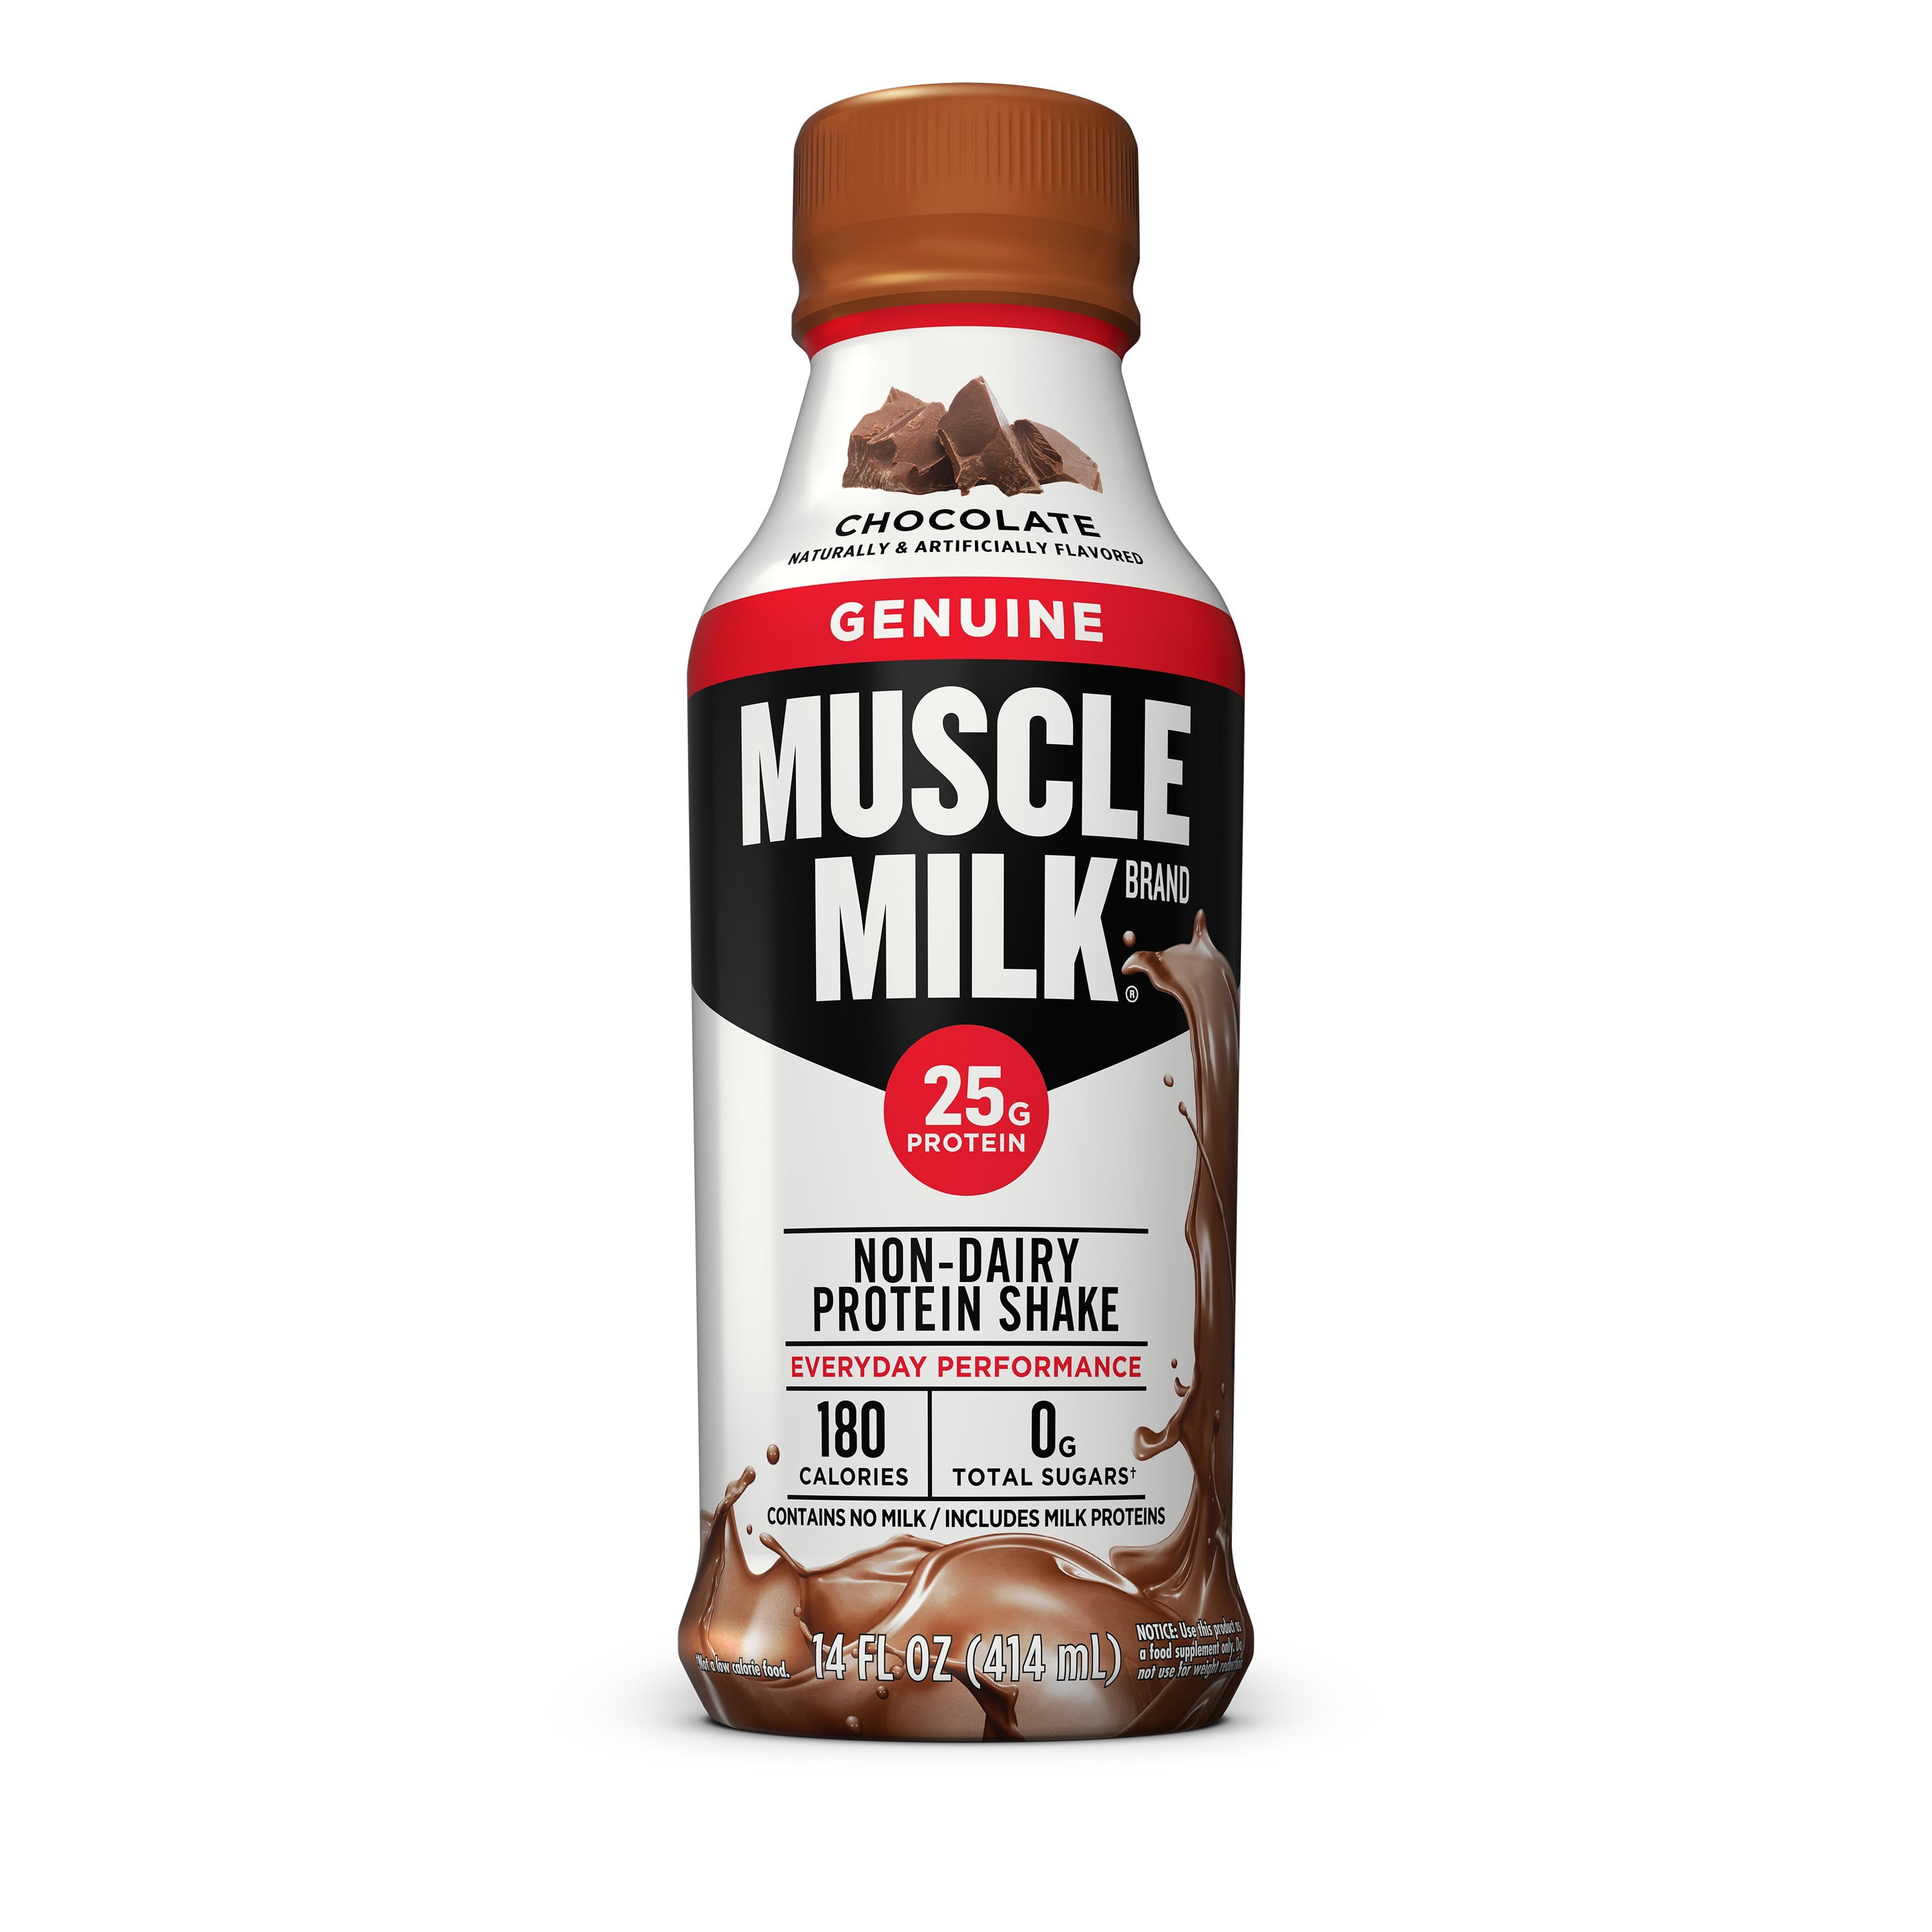 Muscle Milk Genuine Protein Shake, Chocolate, 25g Protein, 14 oz Bottle - Walmart.com